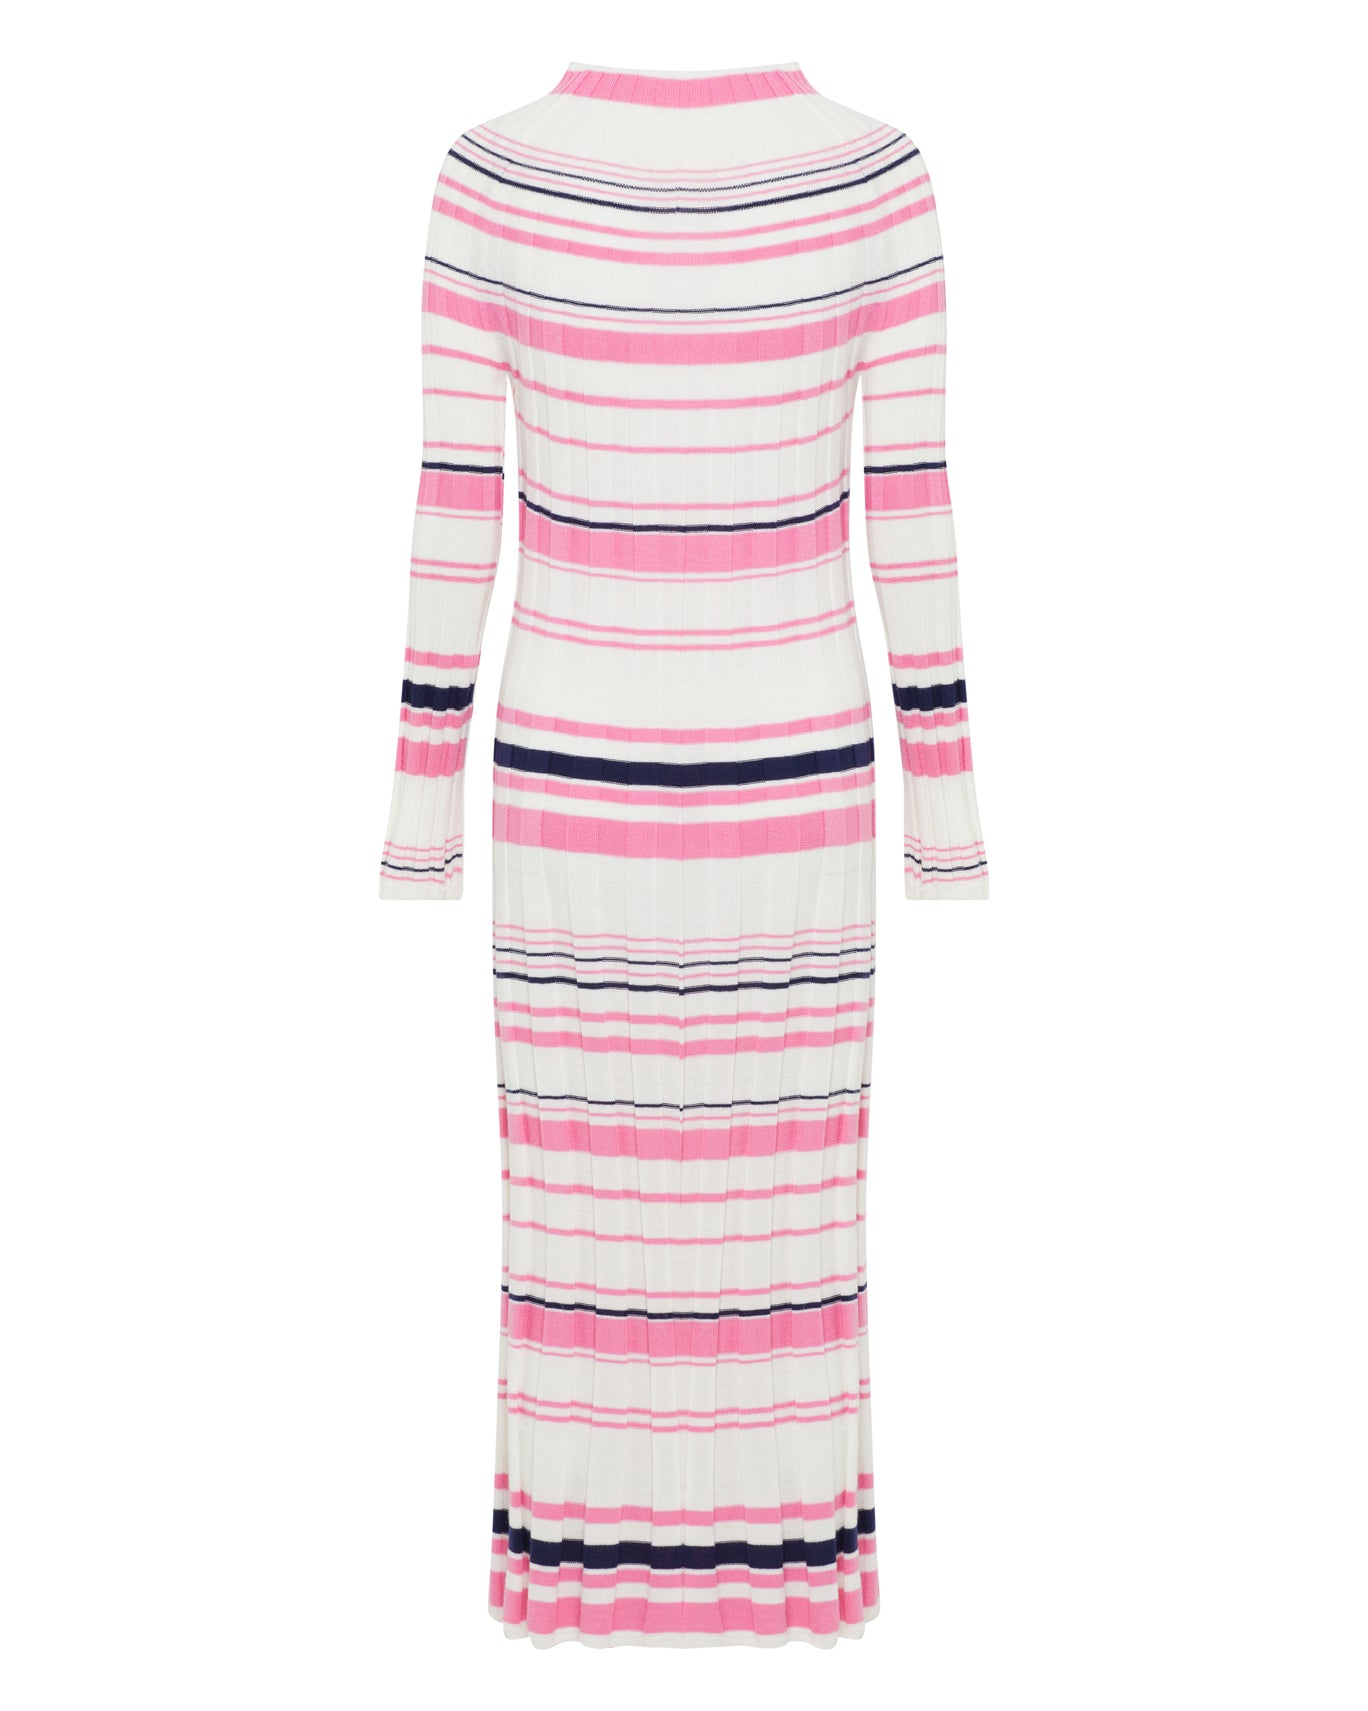 Pre-Sale Iris & Wool - Poppy Dress - Stripe